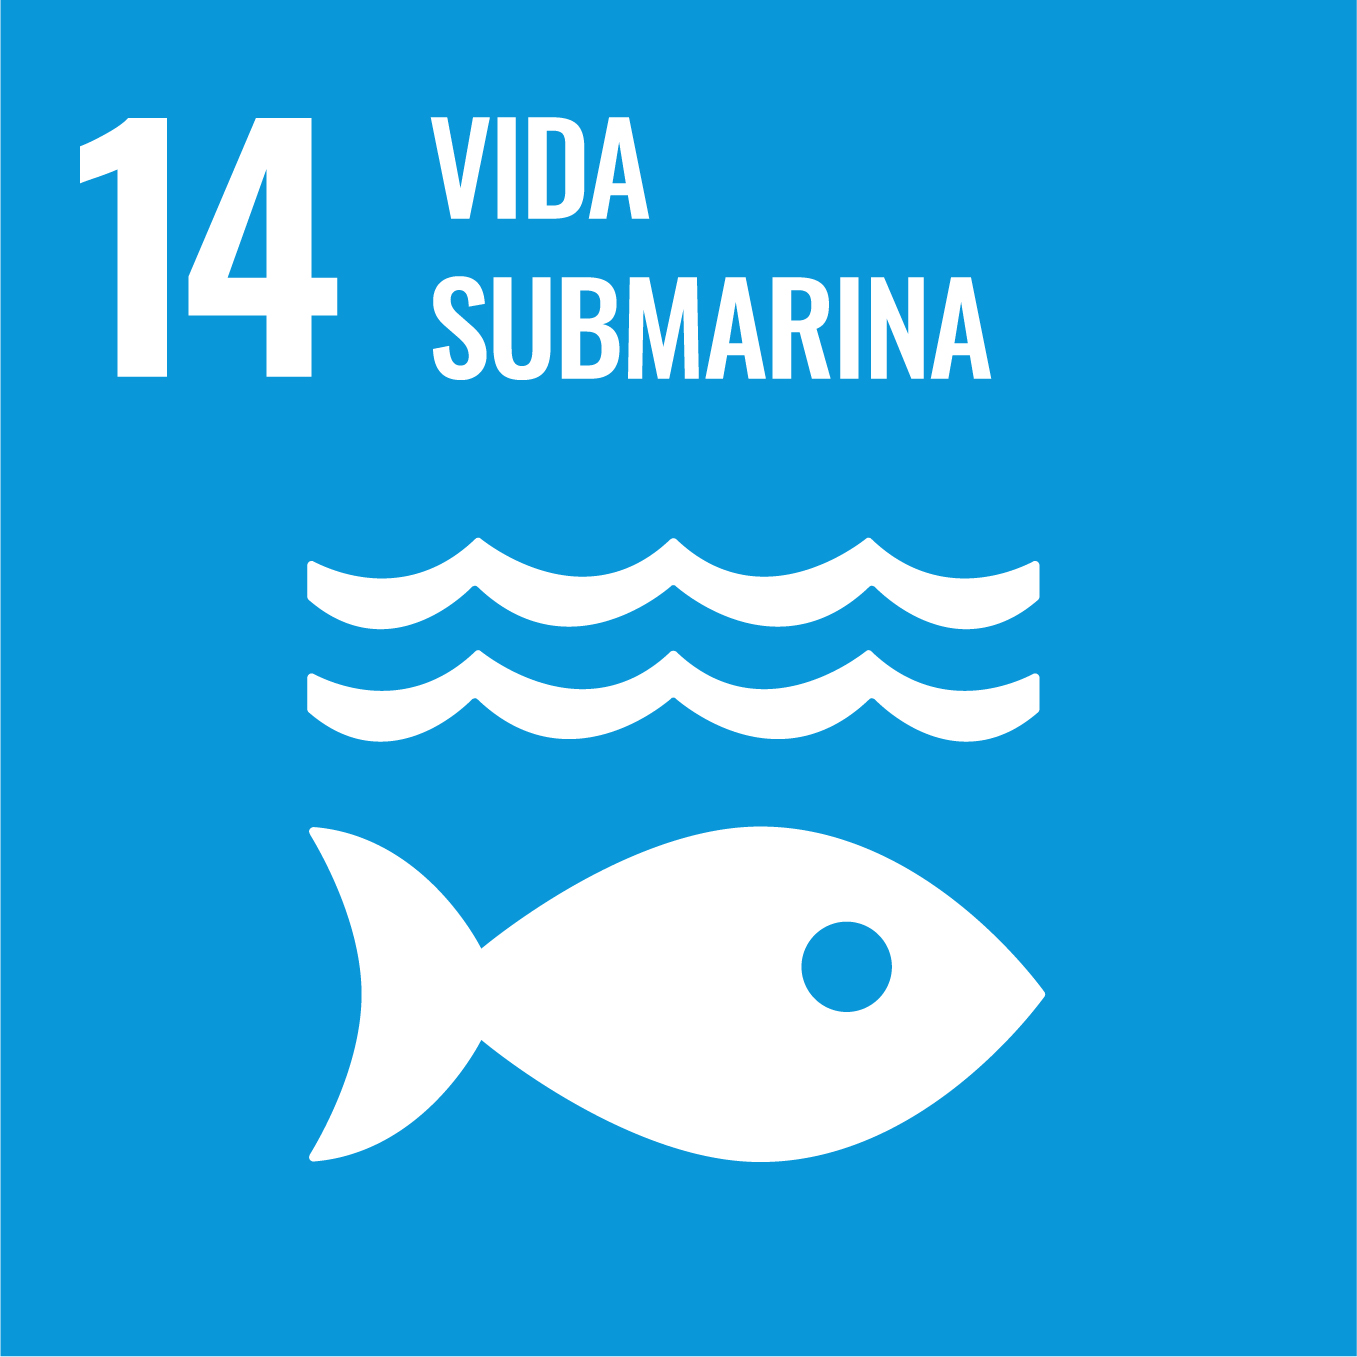 Conservar i utilitzar de forma sostenible els oceans, els mars i els recursos marins per al desenvolupament sostenible